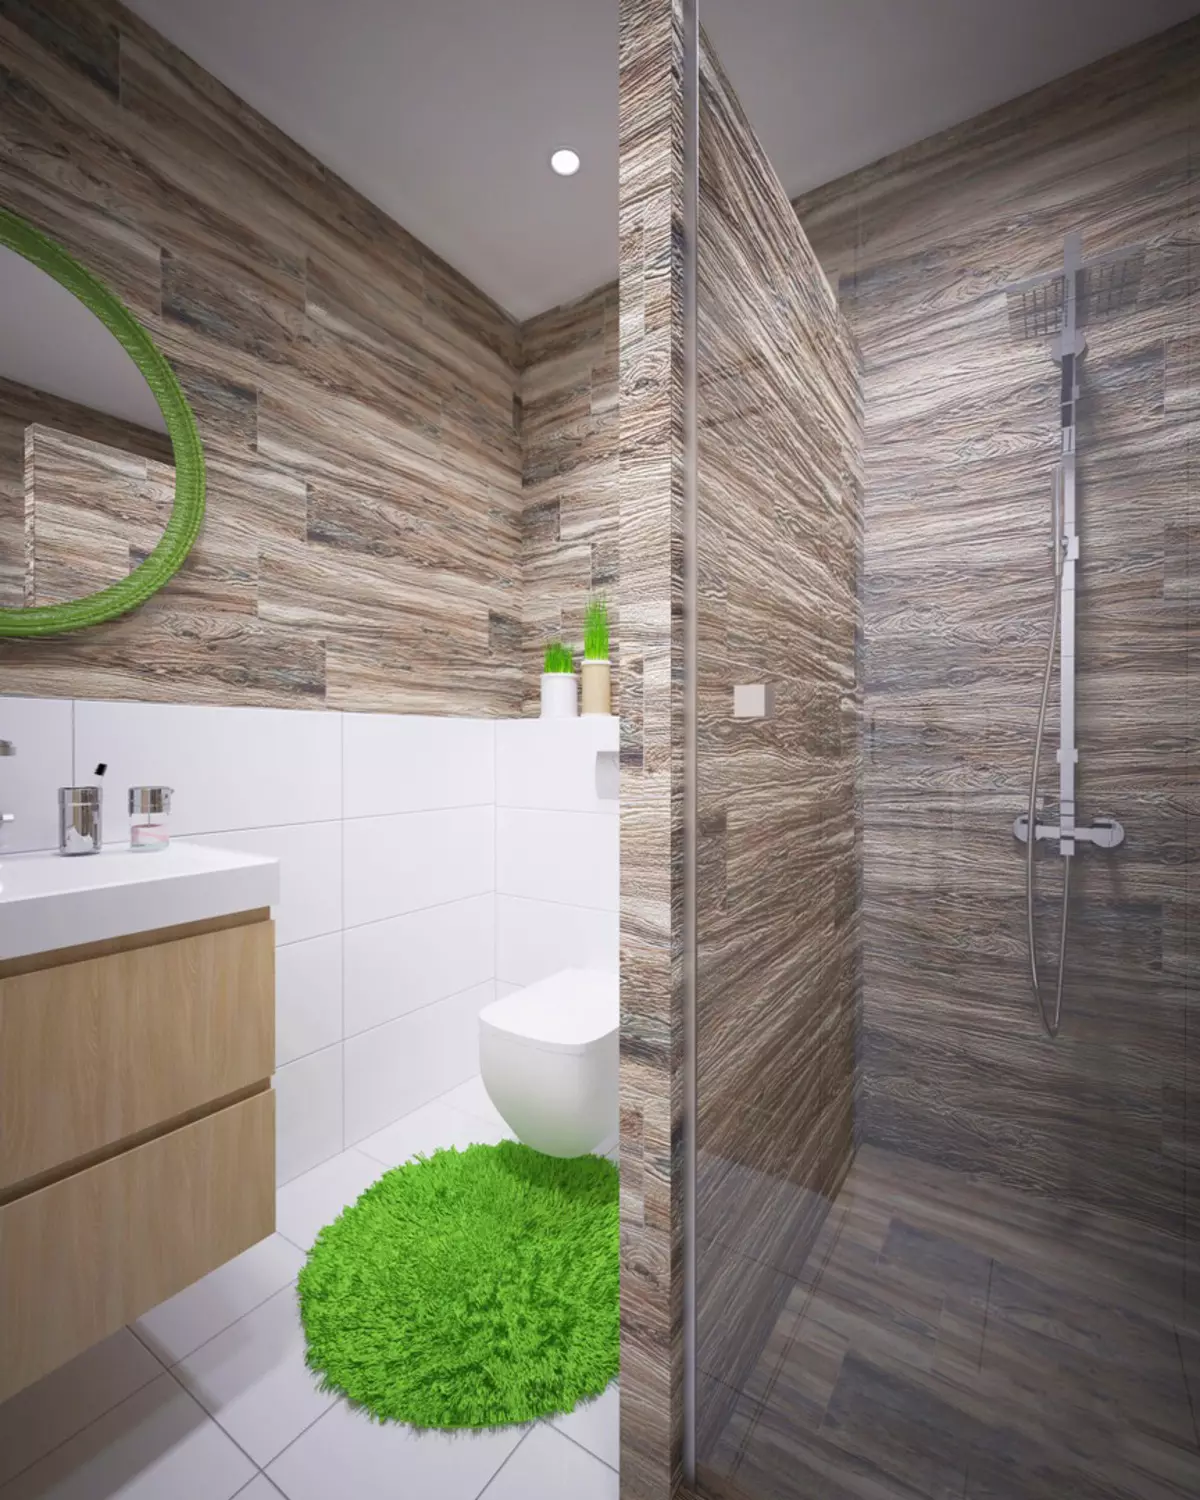 Угаалгын өрөөний дизайны 4 хавтгай дөрвөлжин метр. M (97 зураг): 4 квадратын орон сууцны орчин үеийн дотоод засал чимэглэл 4 хавтгай дөрвөлжин метр, төлөвлөлтийн санааг төлөвлөх 10139_23